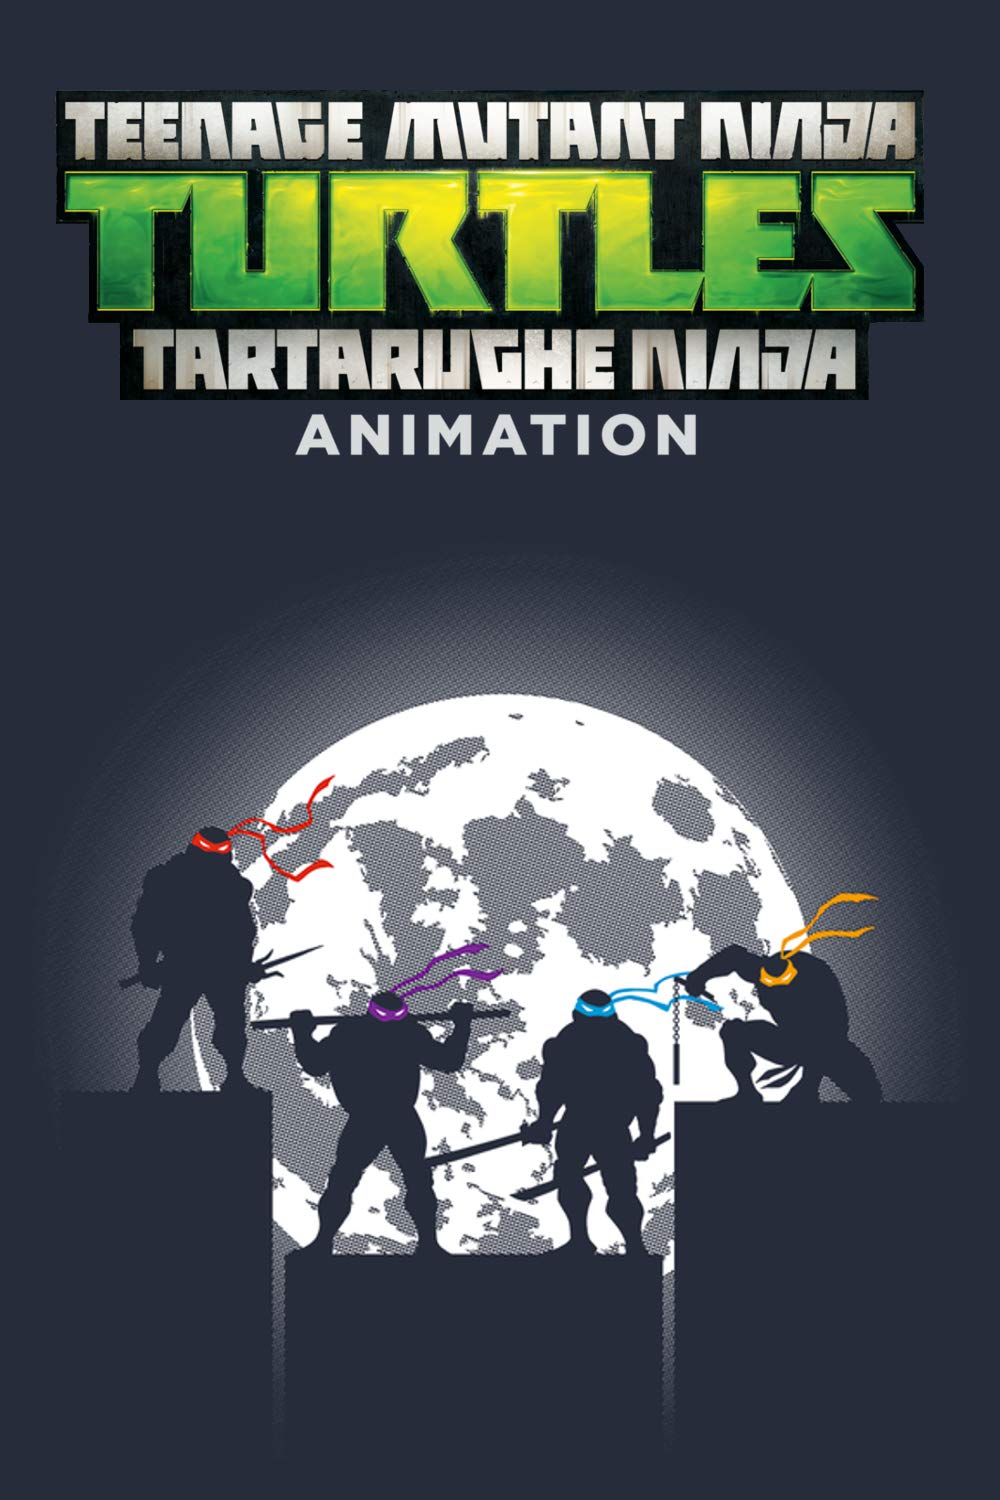 Teenage Mutant Ninja Turtles – Tartarughe Ninja: Animation